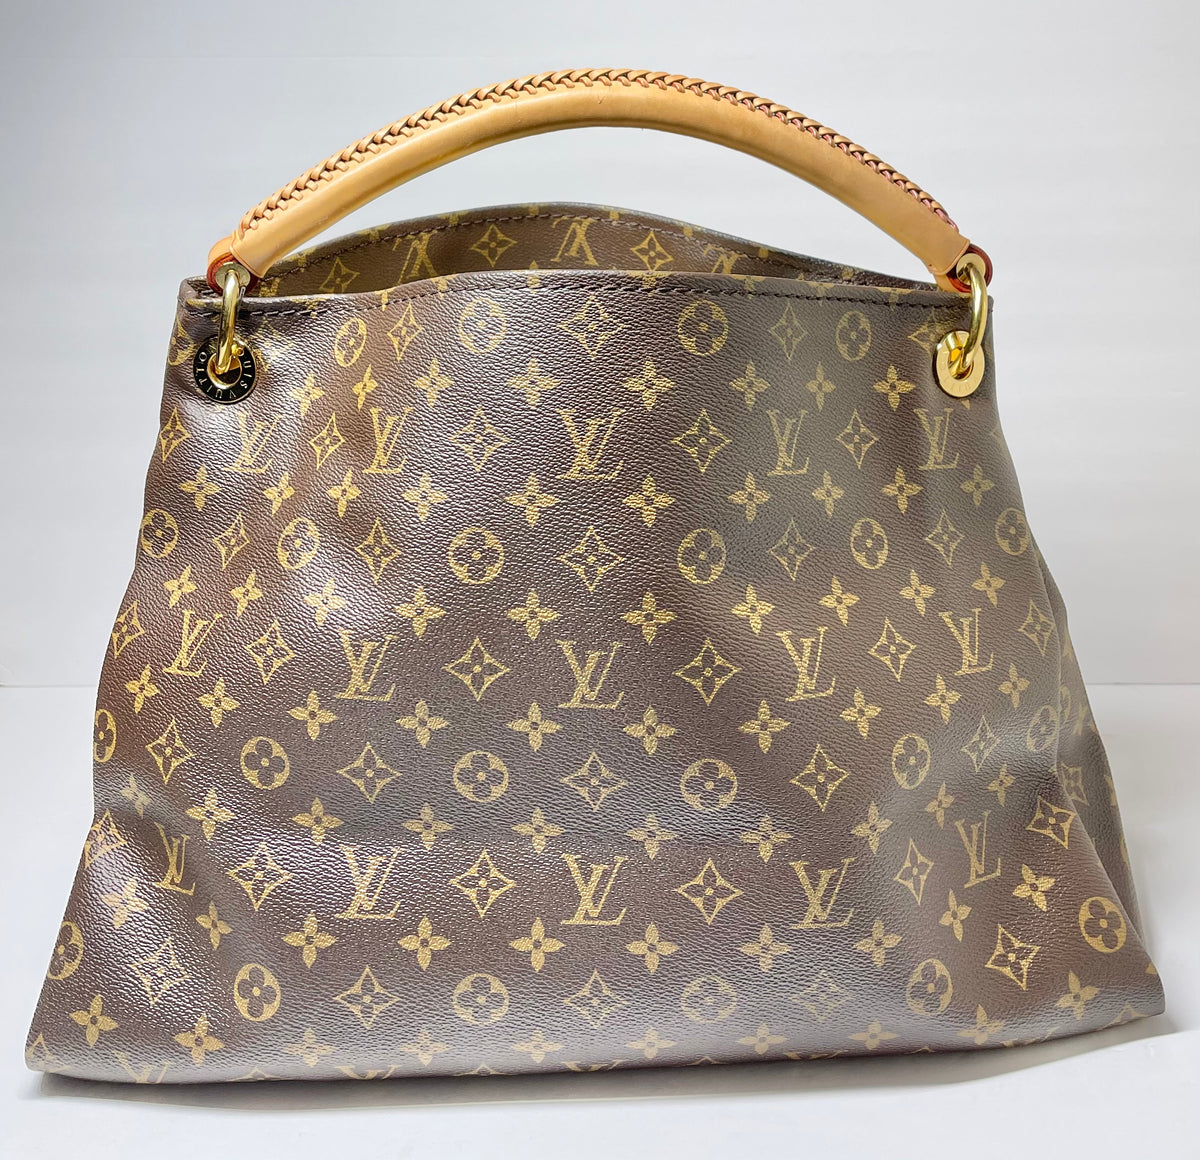 21082-03_Louis_Vuitton_Artsy_Handbag_Monogram_Canv_2D_0003.jpg?v=1575947393